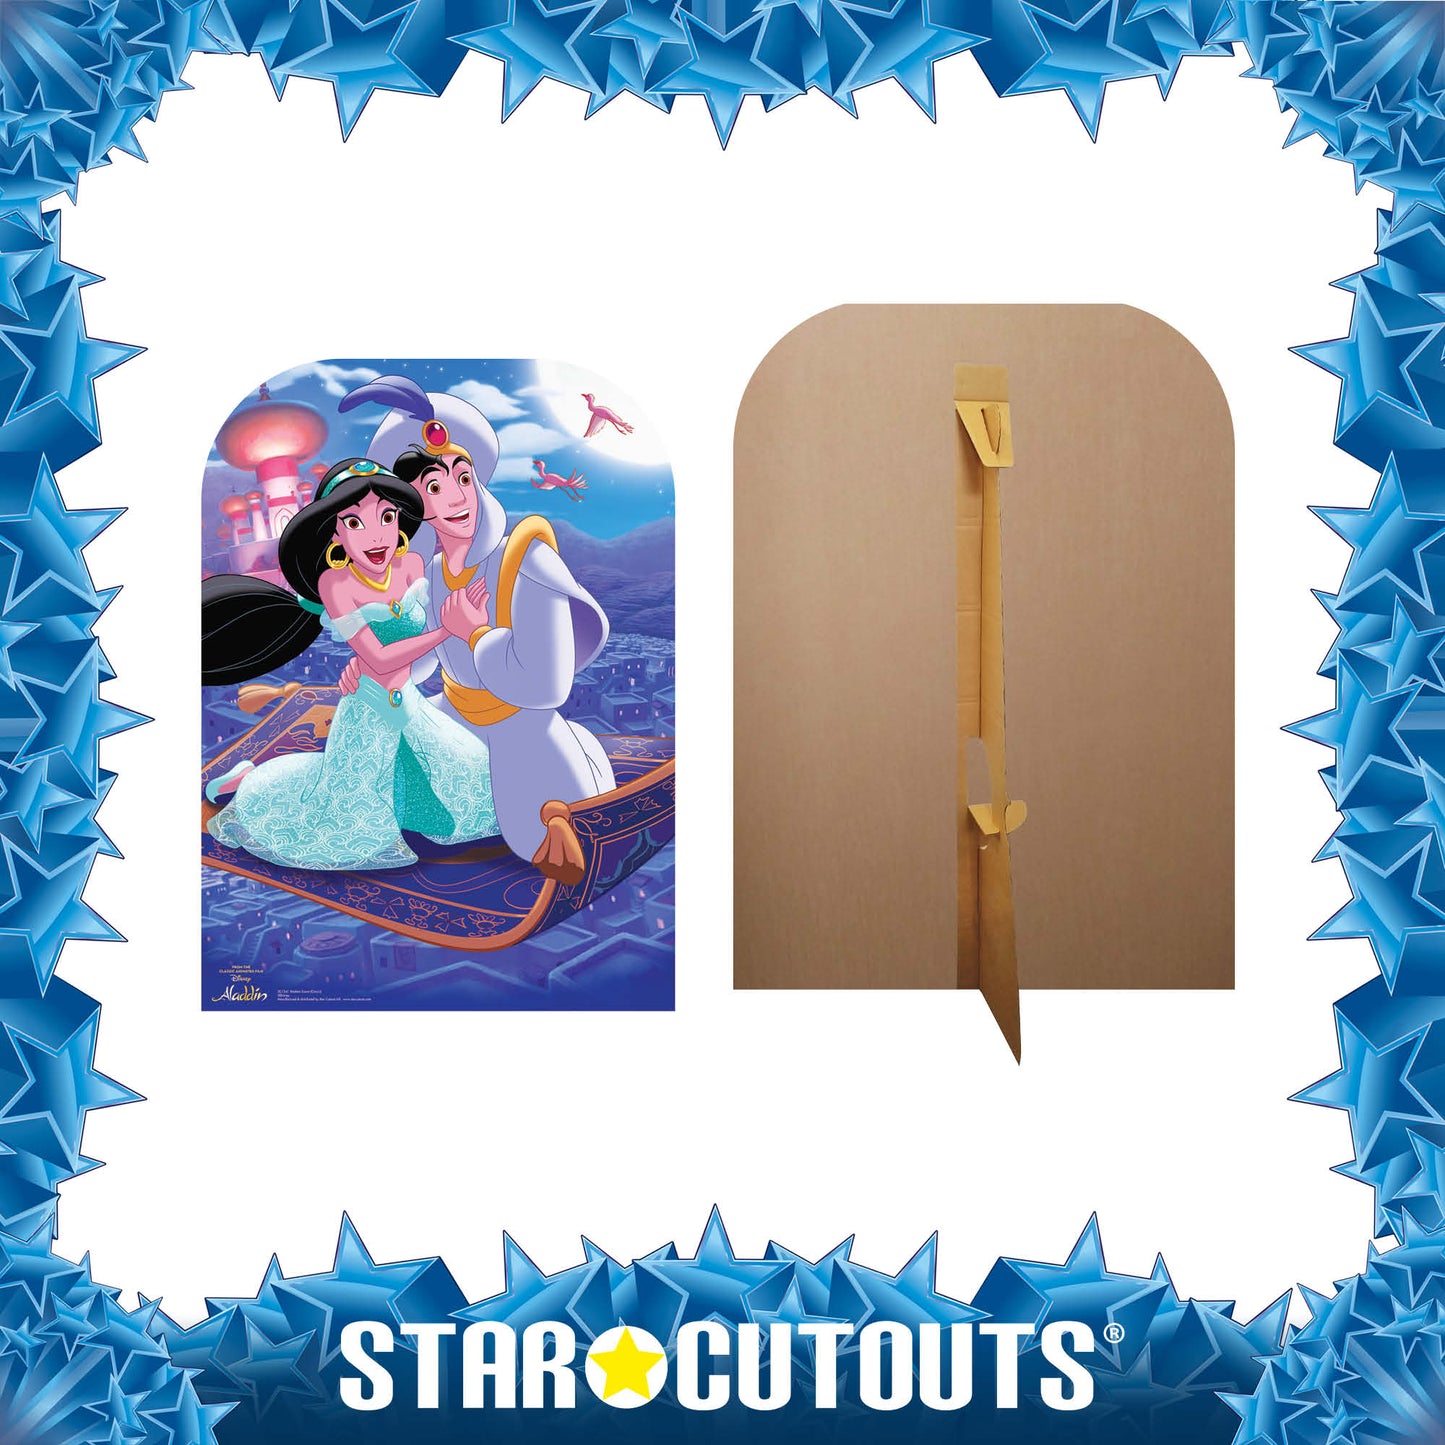 Aladdin Scene Magic Carpet Classic Cardboard Cut Out Height 130cm